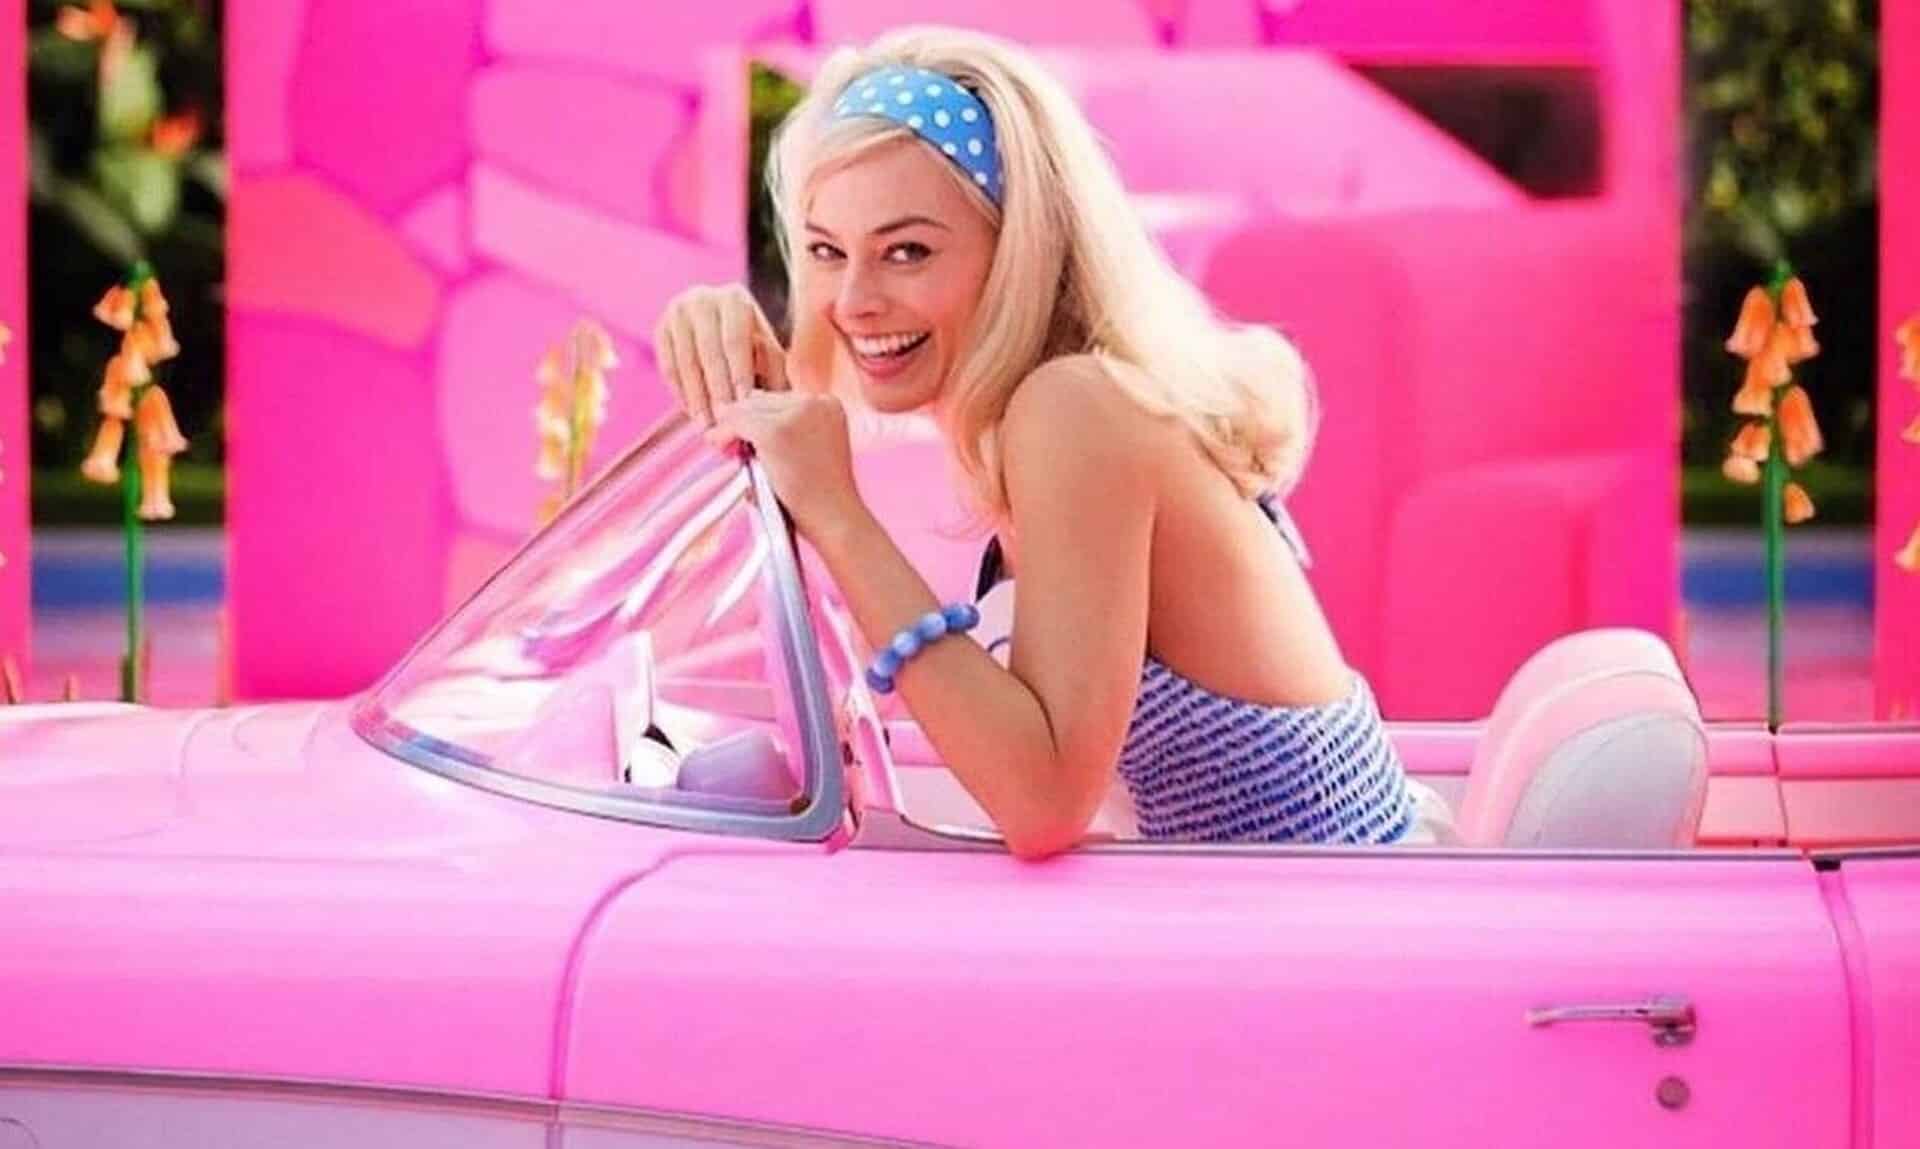 Η συναρπαστική ιστορία της γυναίκας που δημιούργησε την Barbie: Τα ερωτικά παιχνίδια και τα οικονομικά σκάνδαλα